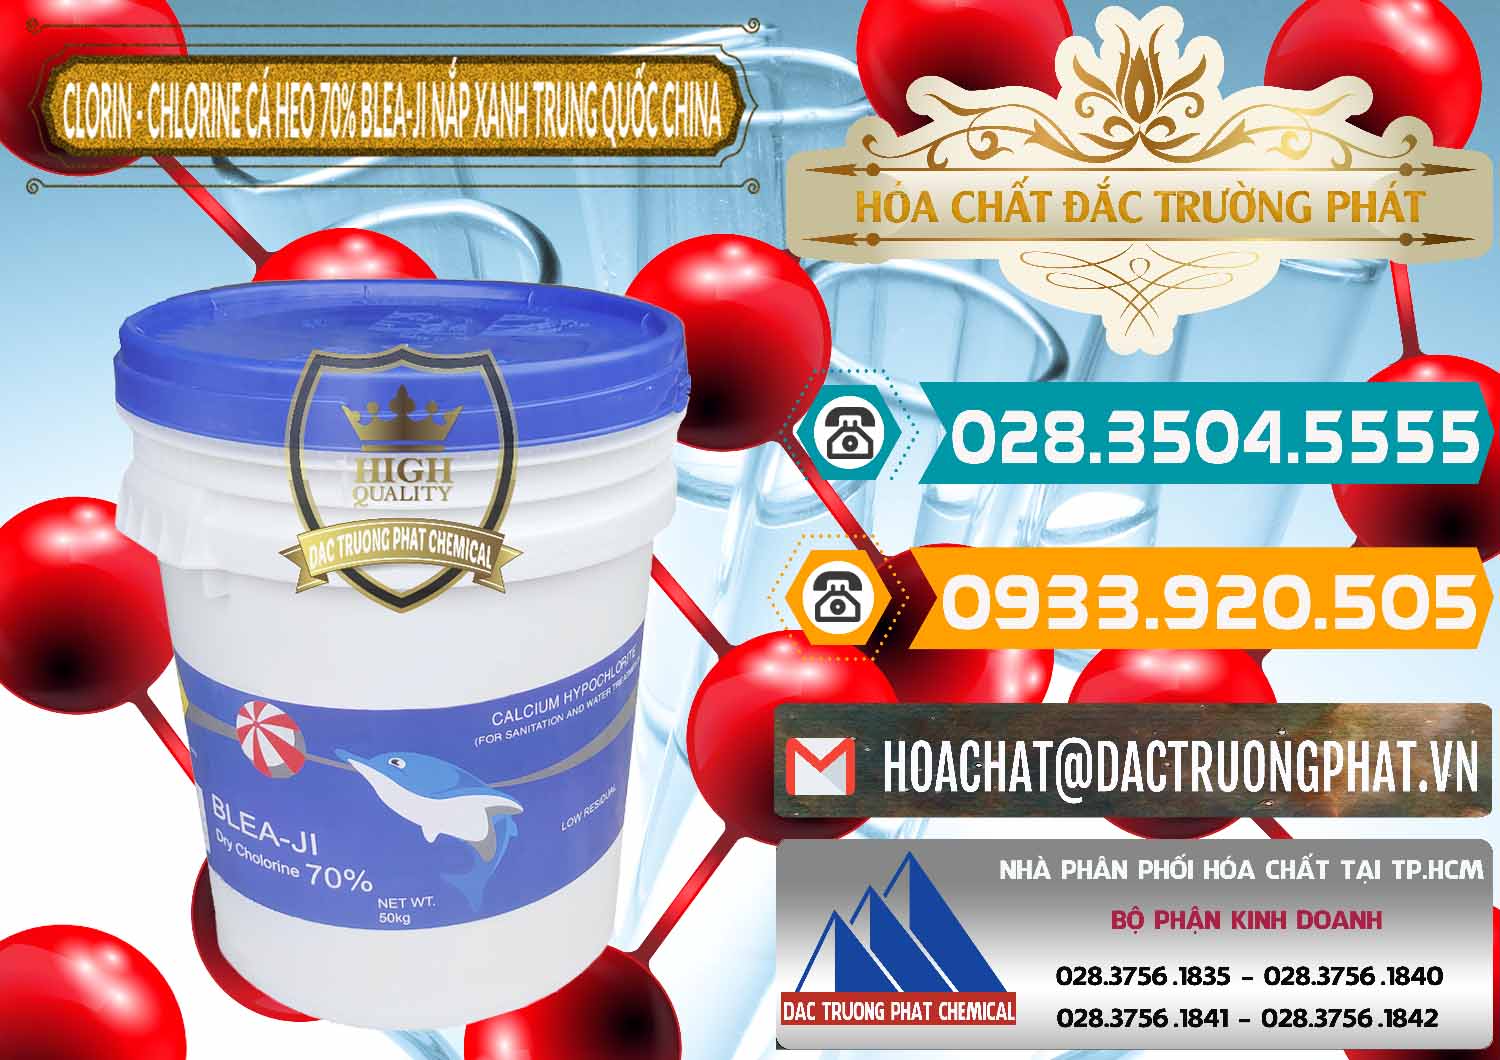 Công ty kinh doanh & bán Clorin - Chlorine Cá Heo 70% Cá Heo Blea-Ji Thùng Tròn Nắp Xanh Trung Quốc China - 0208 - Phân phối & nhập khẩu hóa chất tại TP.HCM - congtyhoachat.vn